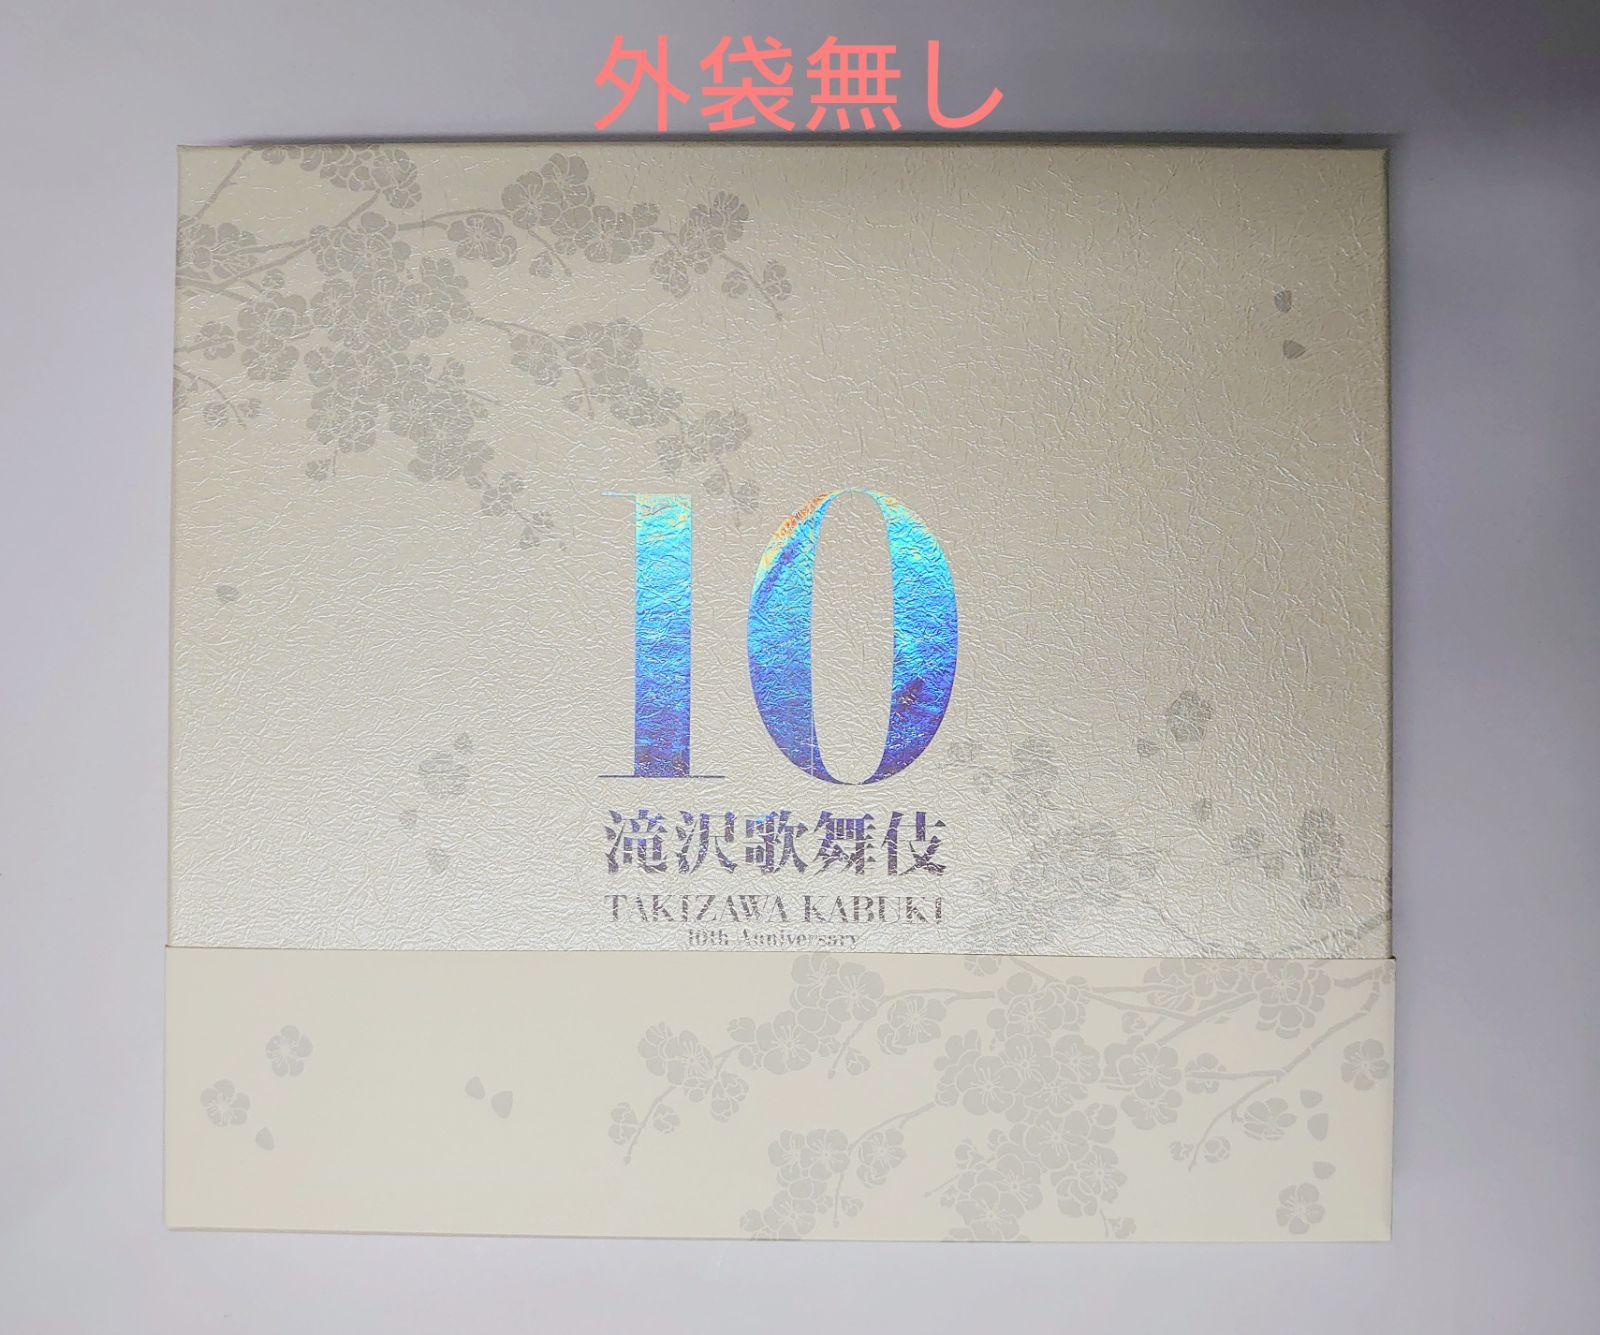 Snow Man 滝沢歌舞伎 10th Anniversary よ〜いやさぁ〜盤-